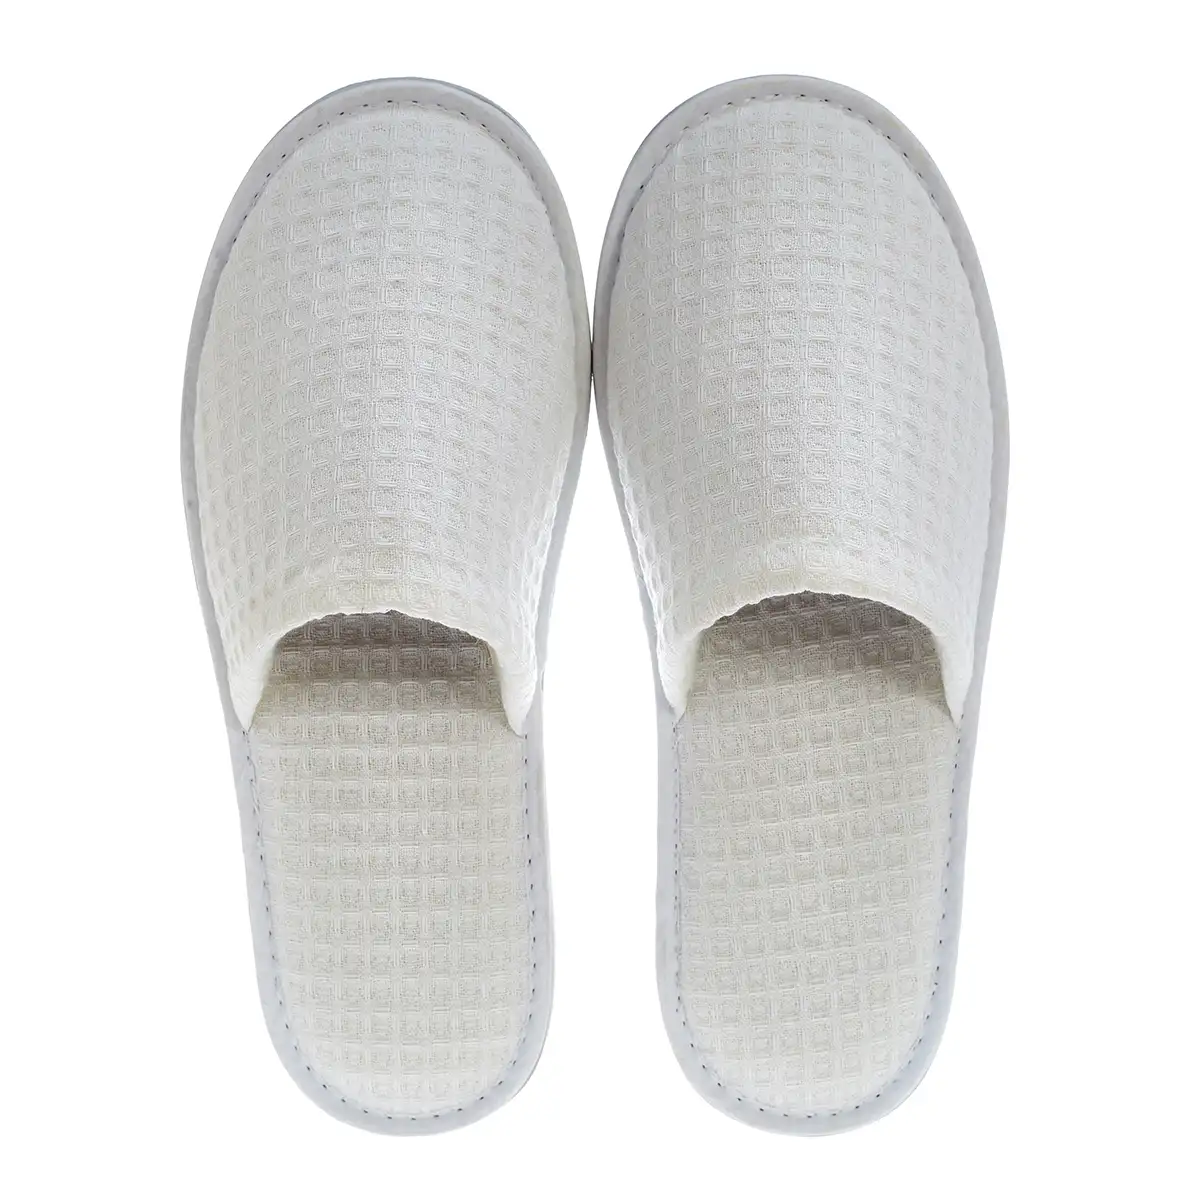 Zapatillas cómodas para invitados de spa personalizadas, color blanco, para baño, desechables, elegantes, para hotel